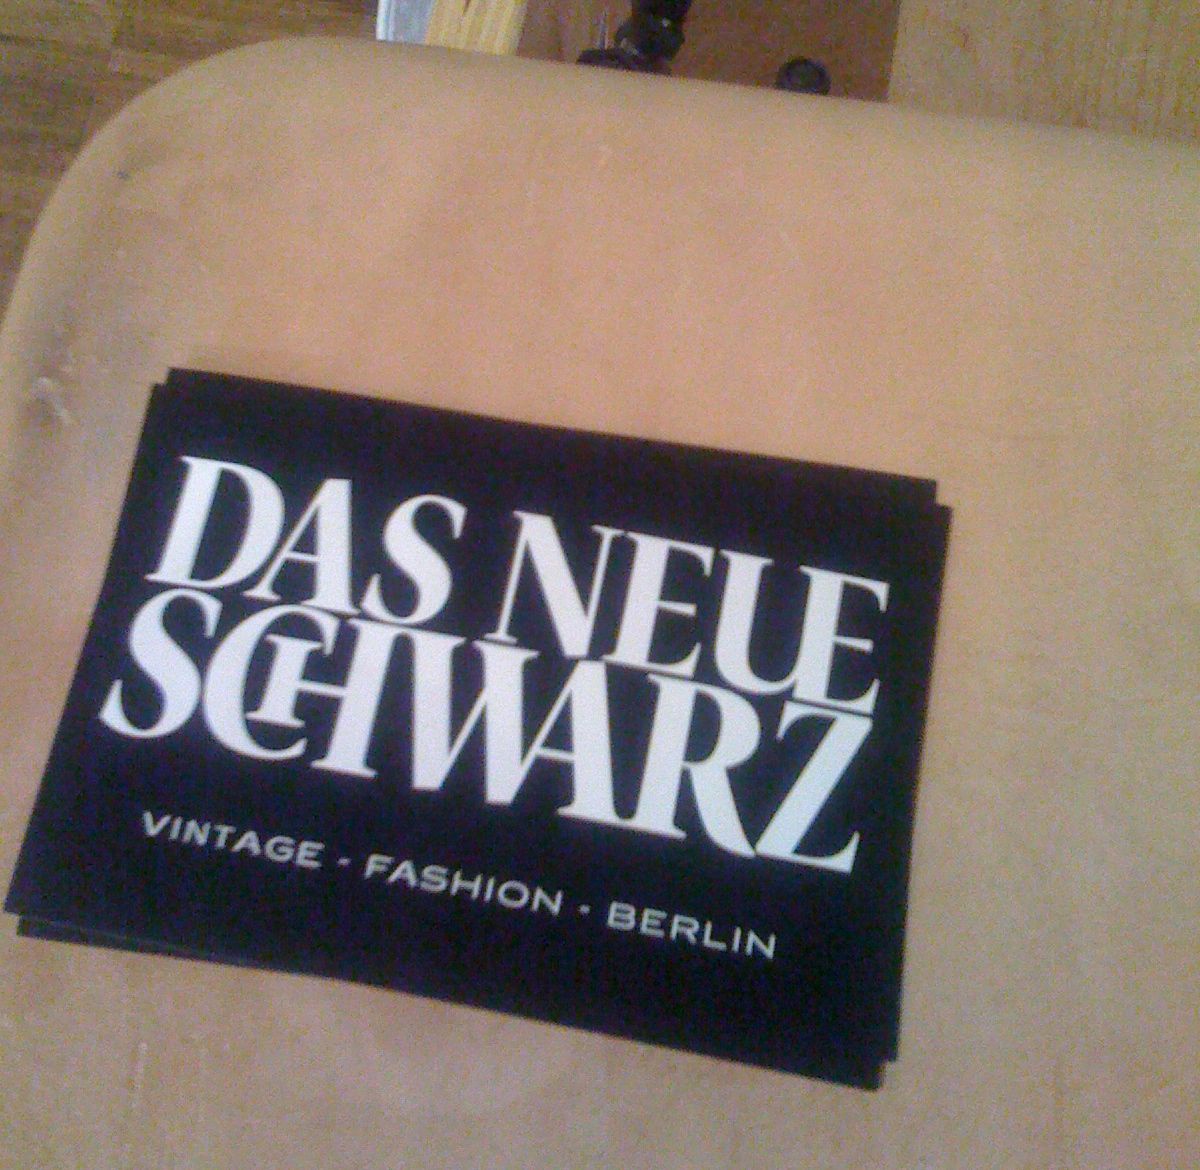 <!--:en-->I Just Adore !!!”Das Neue Schwarz”!!! The Vintage Hand Shop in Berlin Mitte<!--:-->